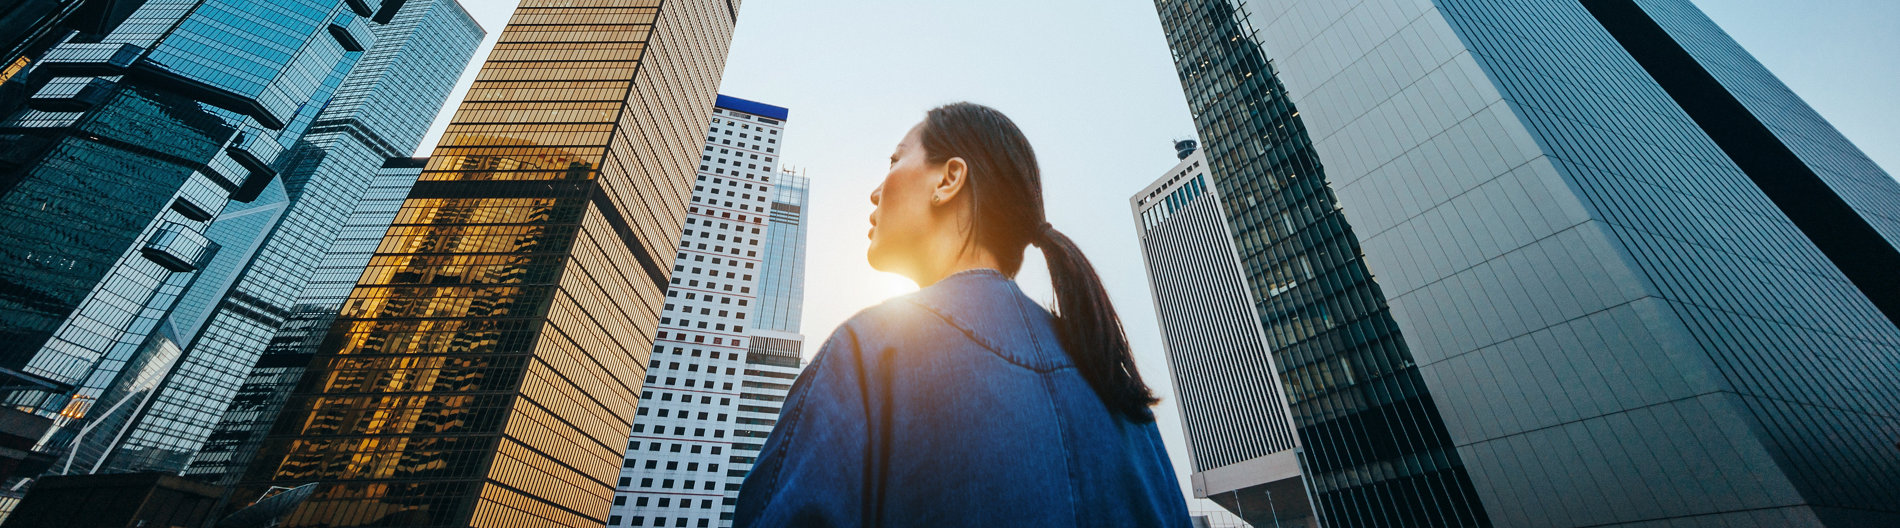 Vue en contrebas d’une femme debout devant des gratte-ciel modernes et un ciel bleu au lever du soleil, en ville.